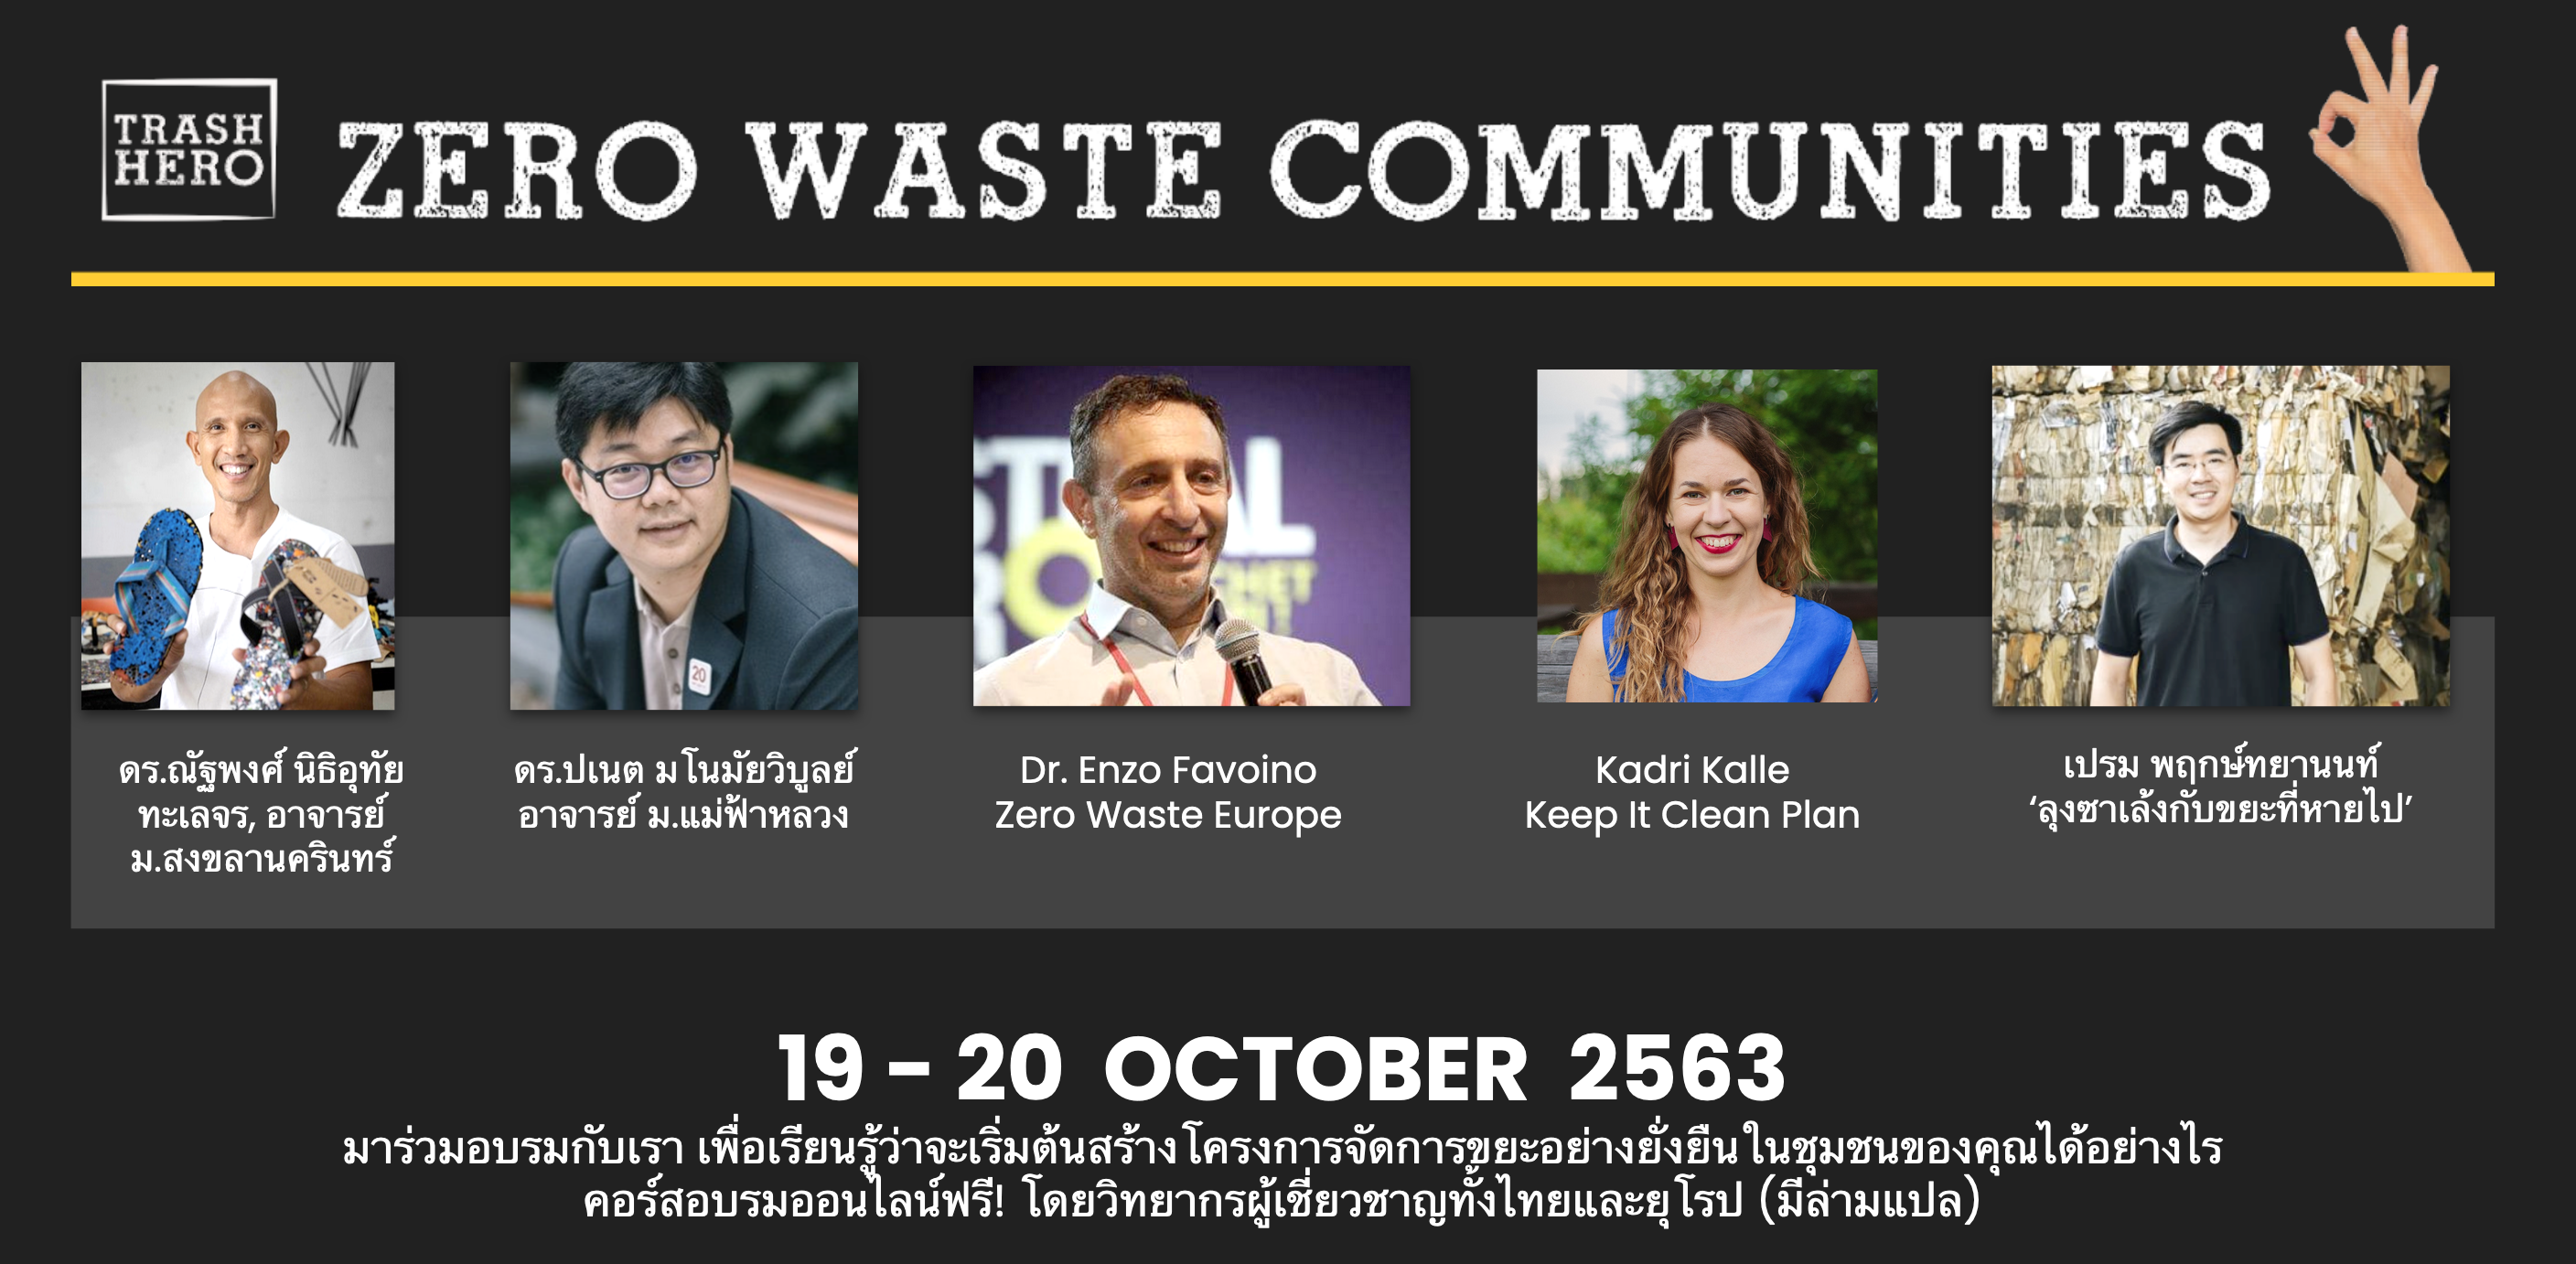 Zero Waste Communities volunteer training